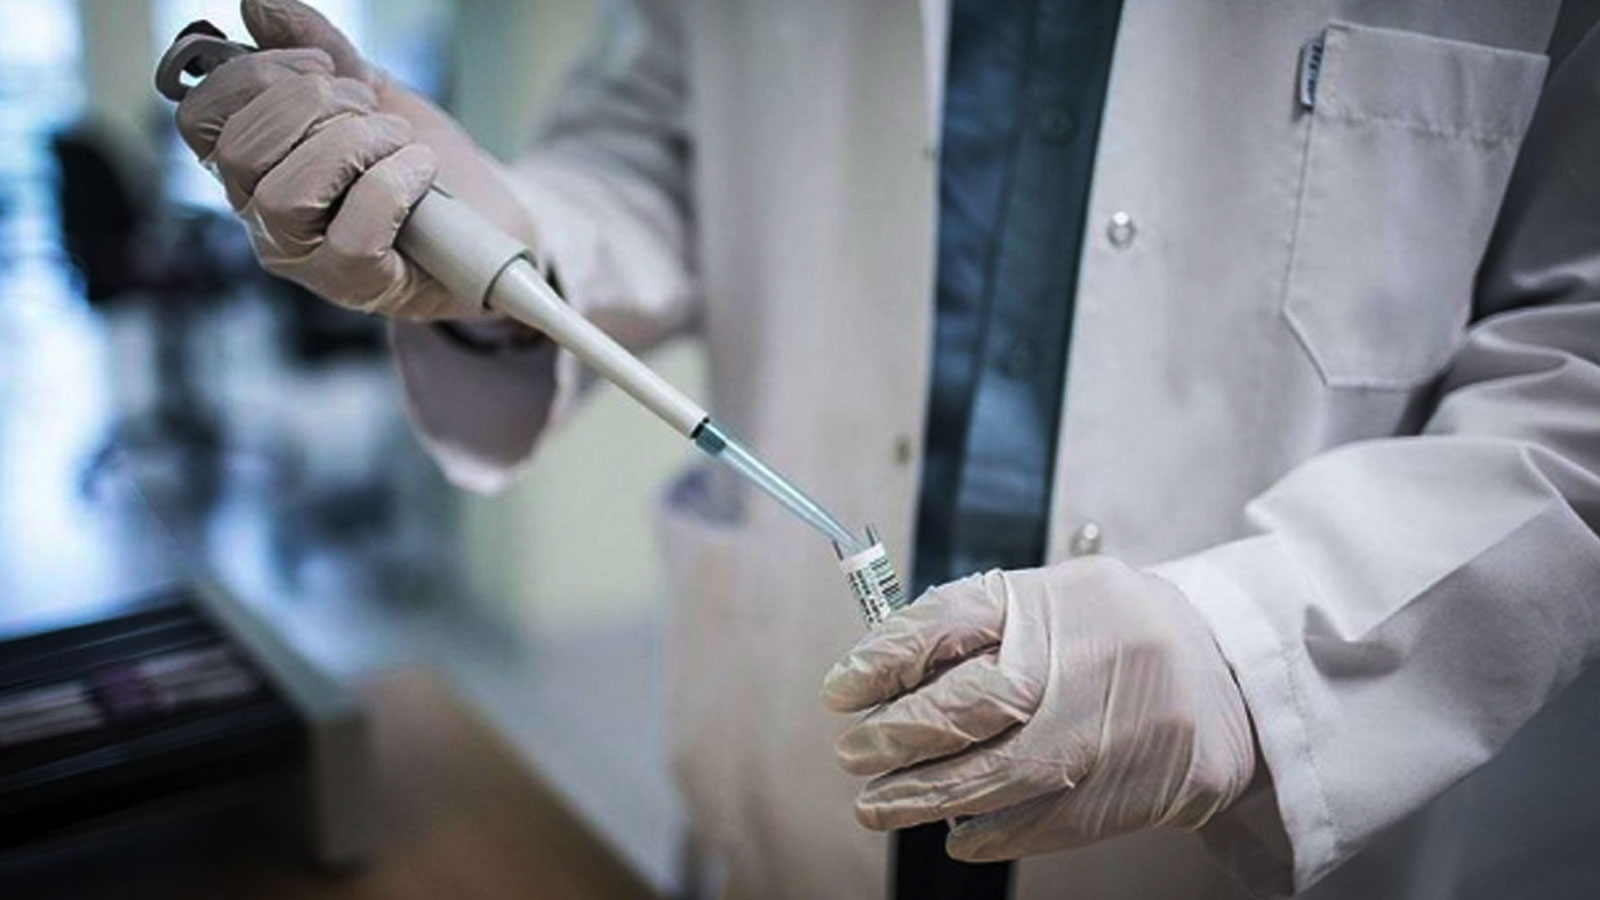 Oxford Üniversitesi'nin yürüttüğü Koronavirüs aşı çalışmasında ikinci faza geçildi